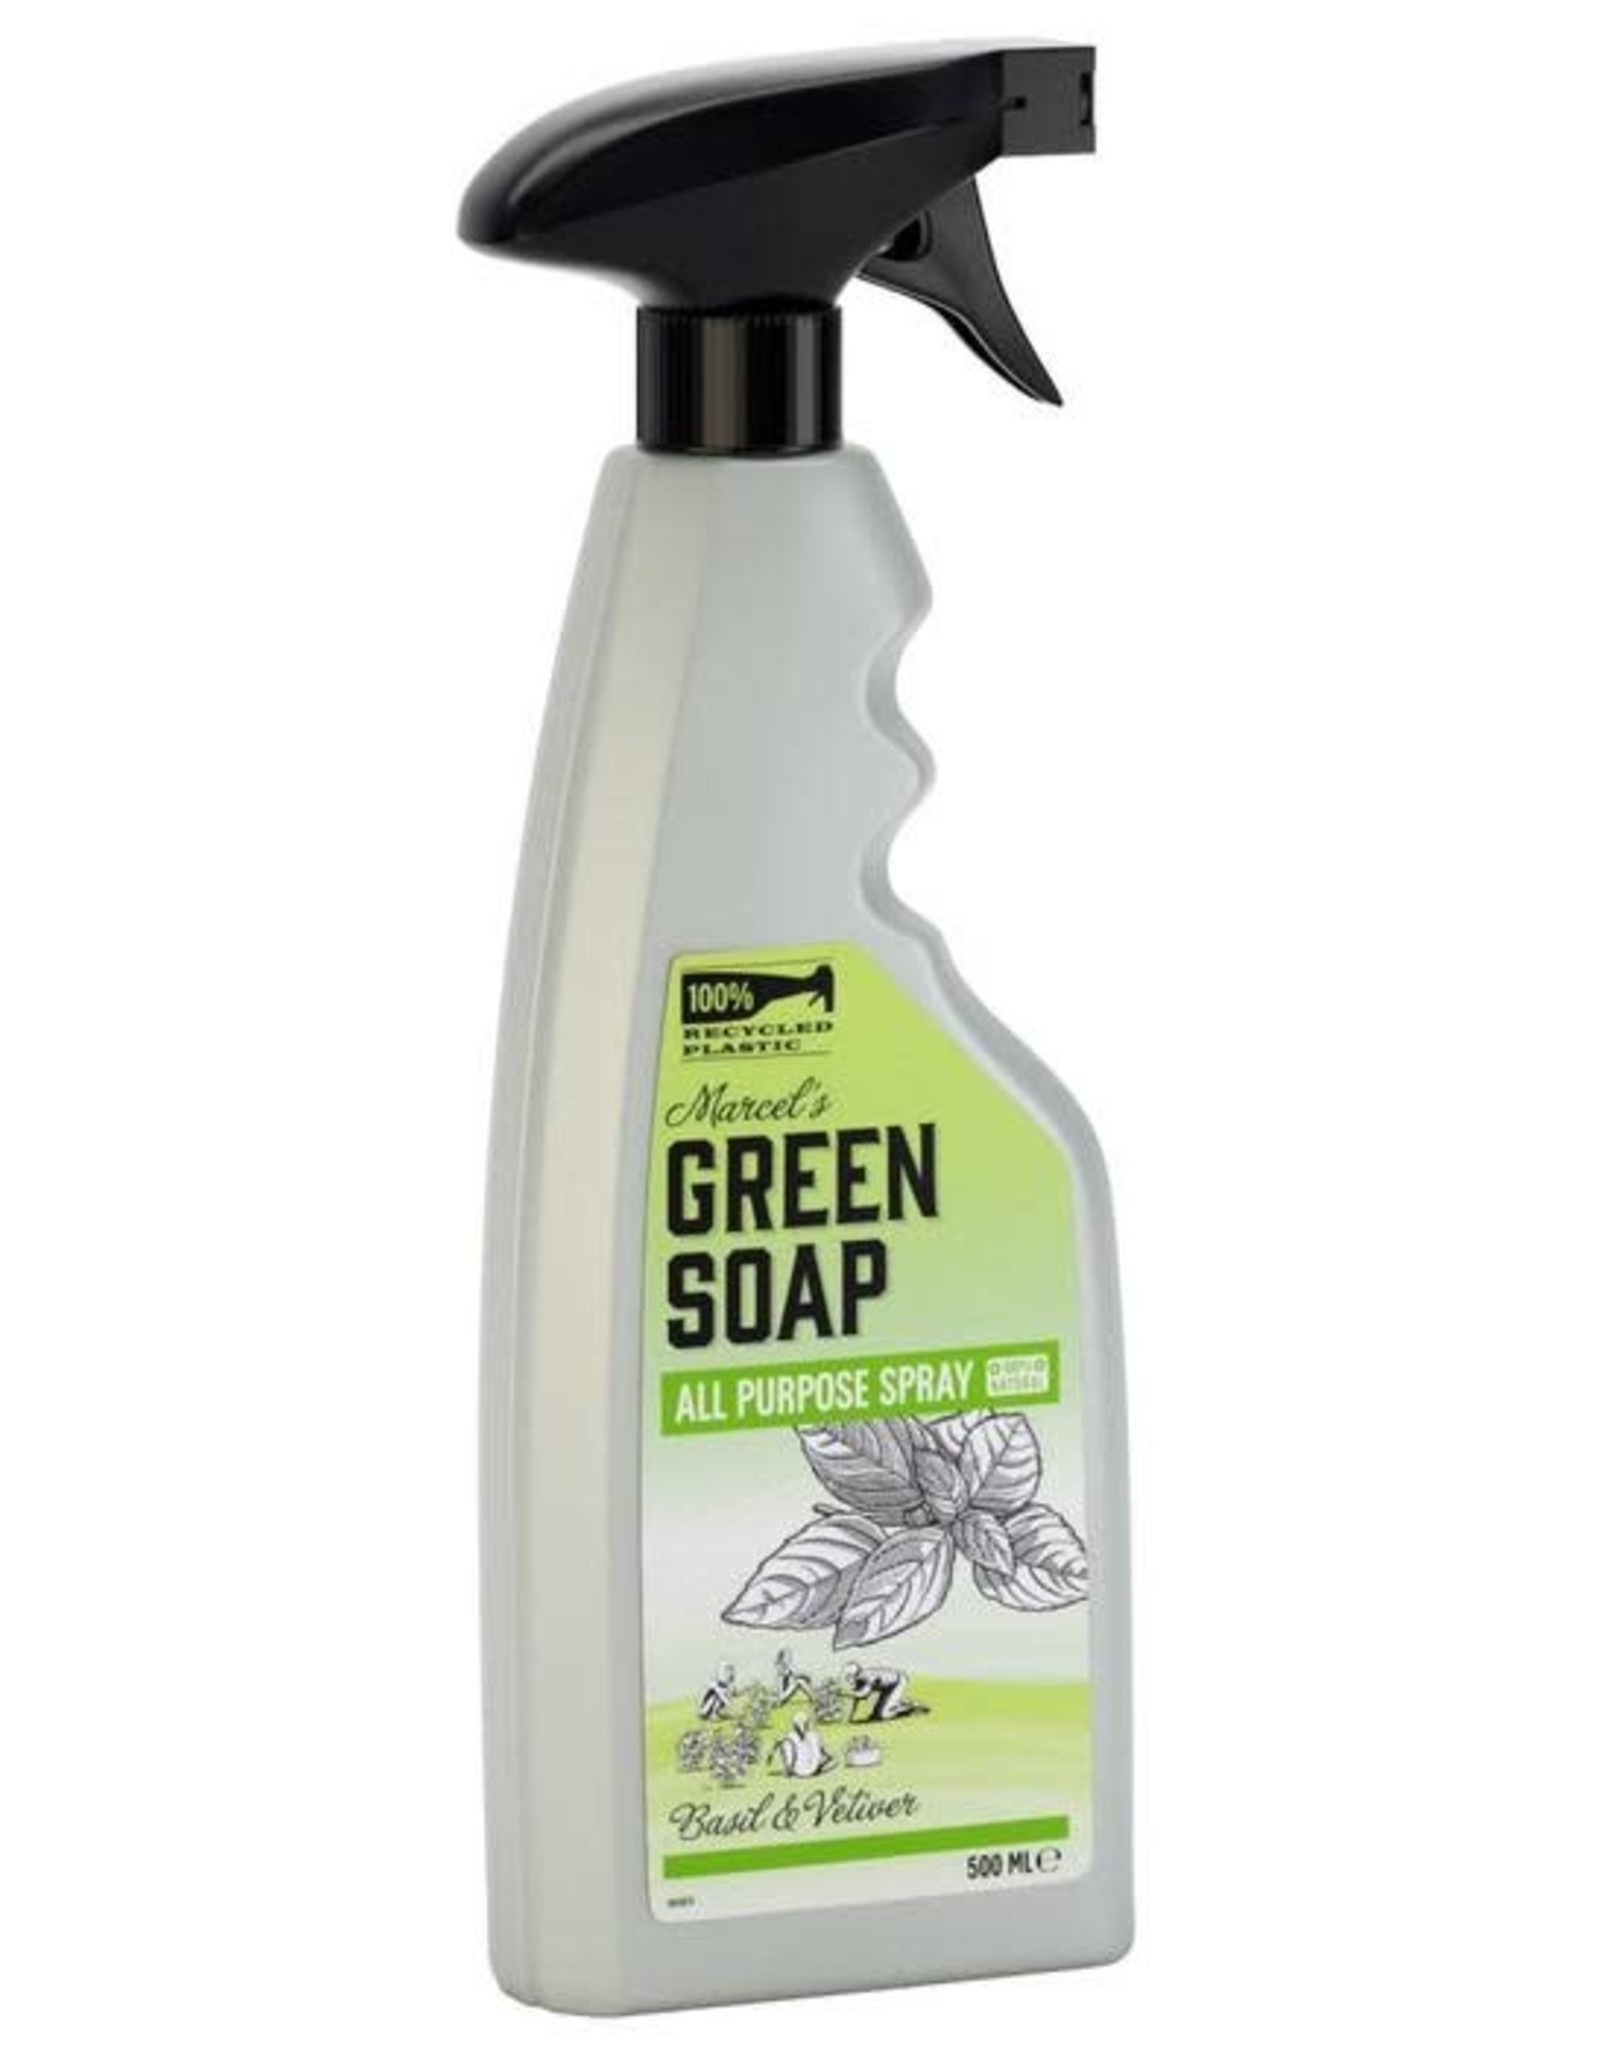 Marcel's Green Soap All Purpose Cleaner Spray Basil & Vetiver 500 ml